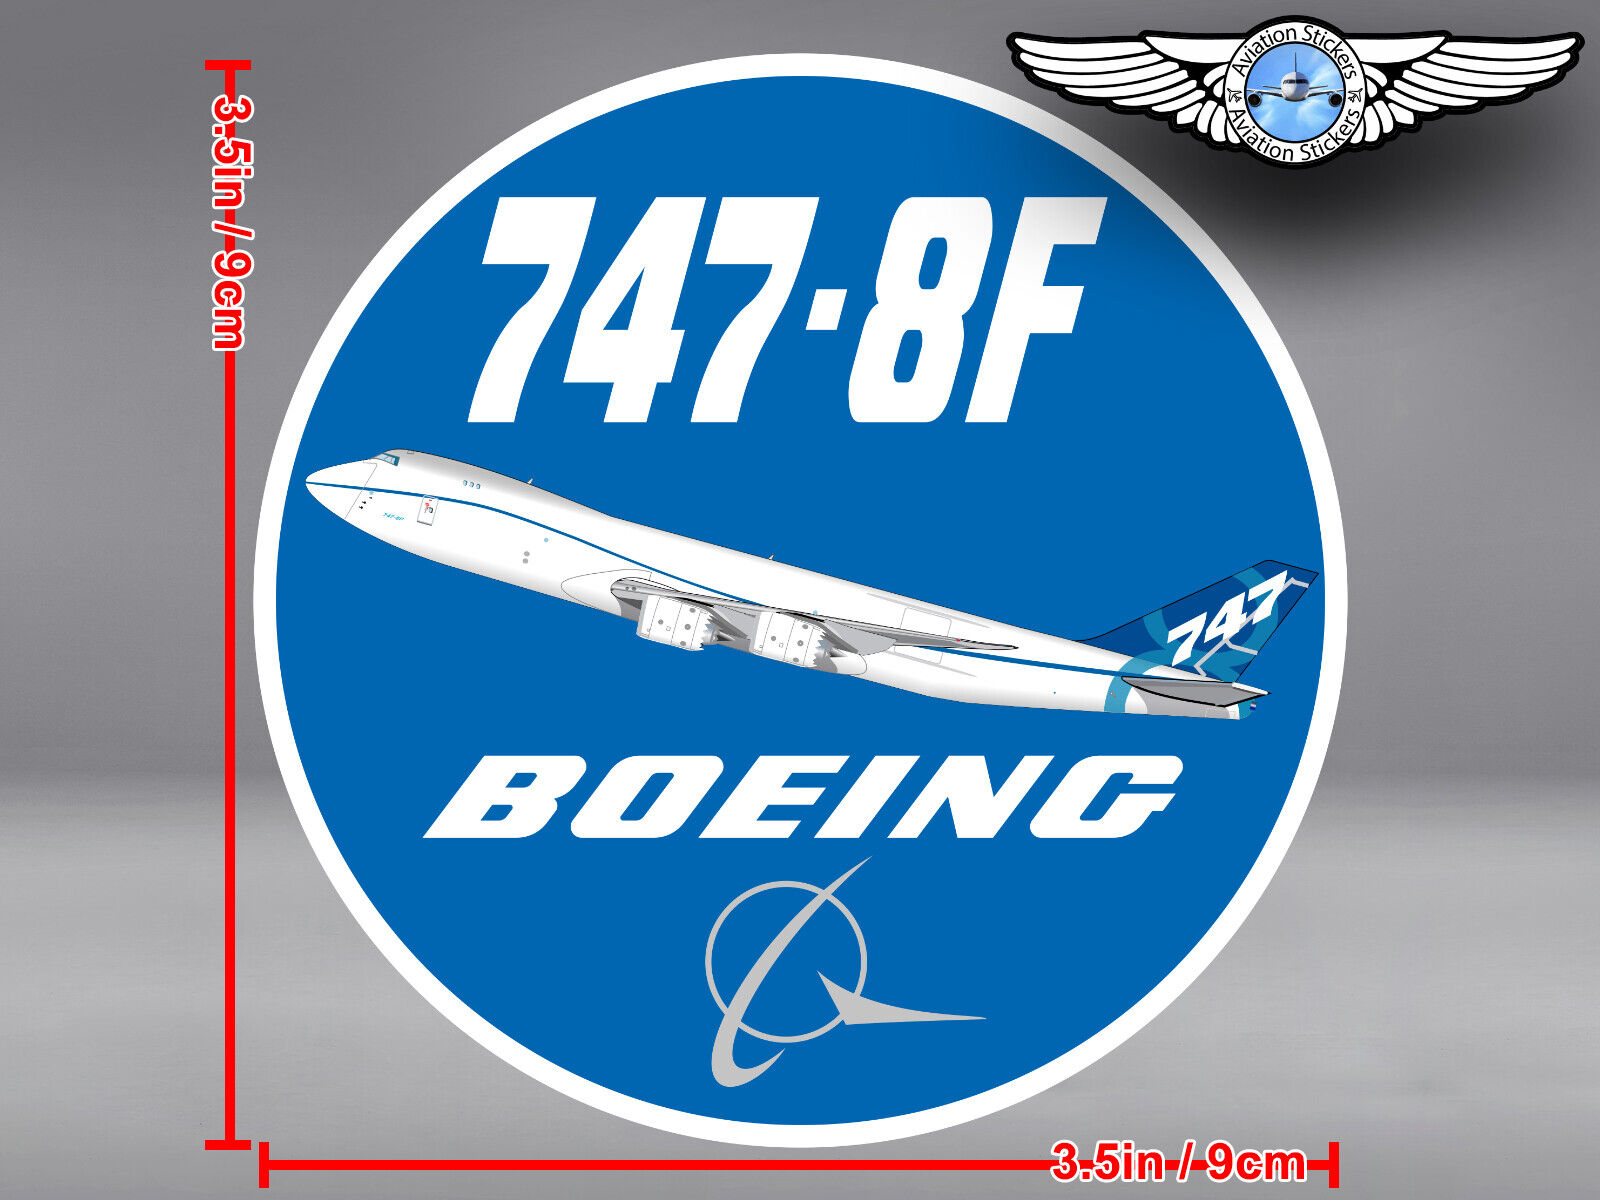 BOEING 747-8F B747 8F ROUND DECAL / STICKER